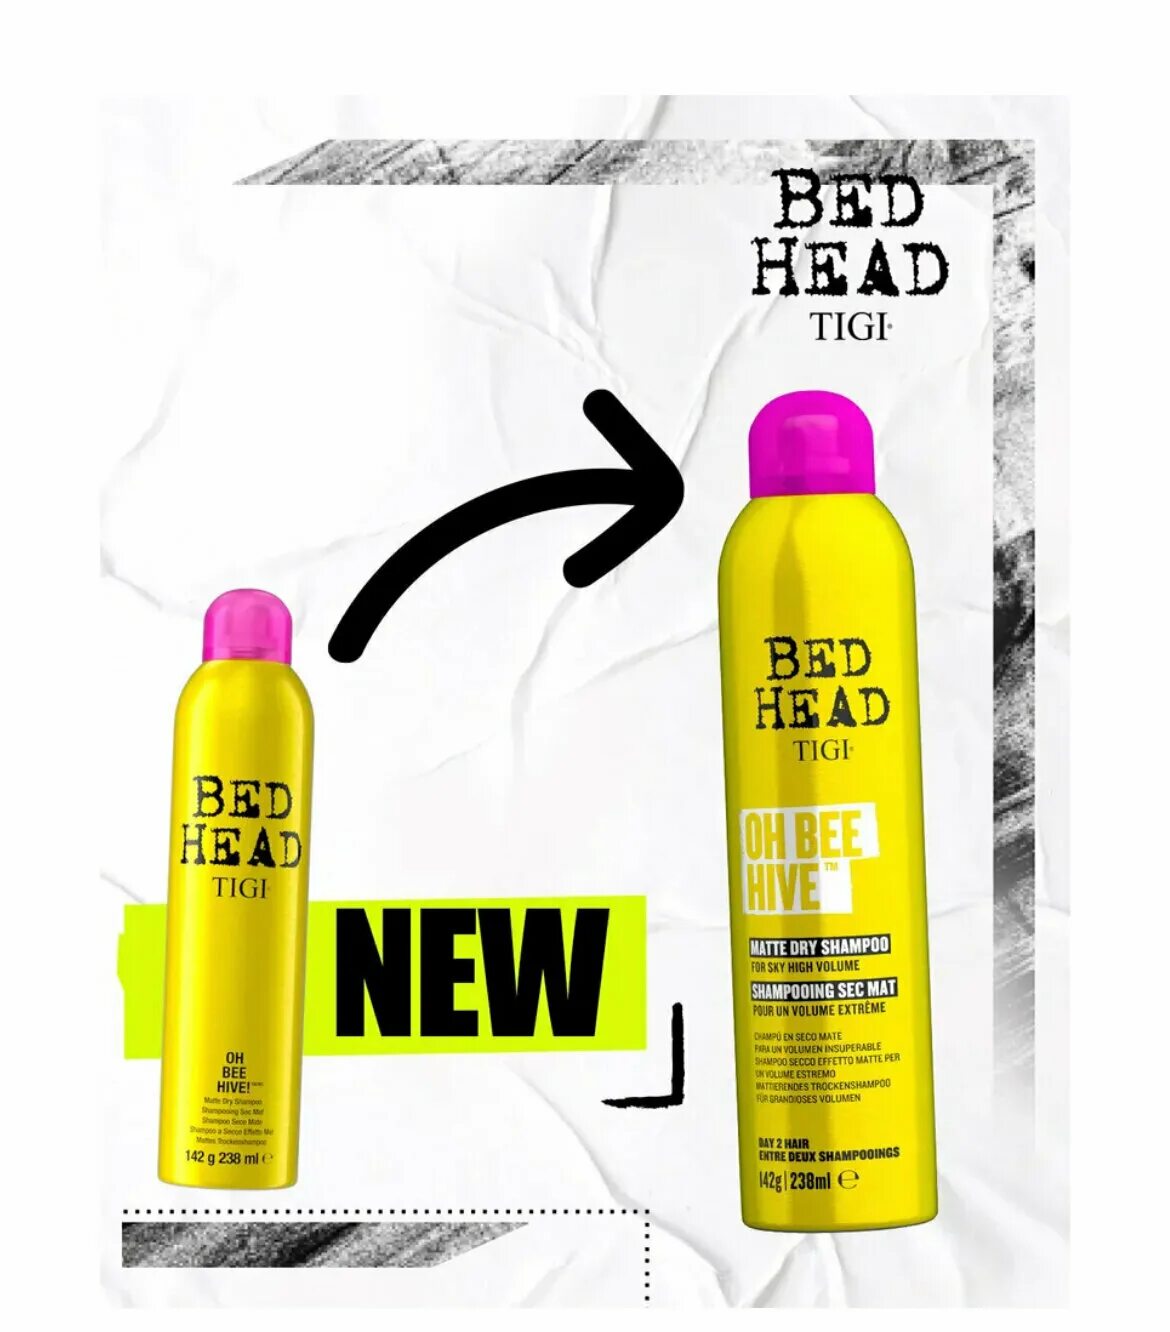 Tigi Bed head сухой шампунь для волос (238 ml). Oh Bee Hive сухой шампунь 238 мл. Tigi Bed head Oh Bee Hive сухой шампунь для придания объема волосам. Шампунь Bed head для осветленных волос. Tigi сухой шампунь